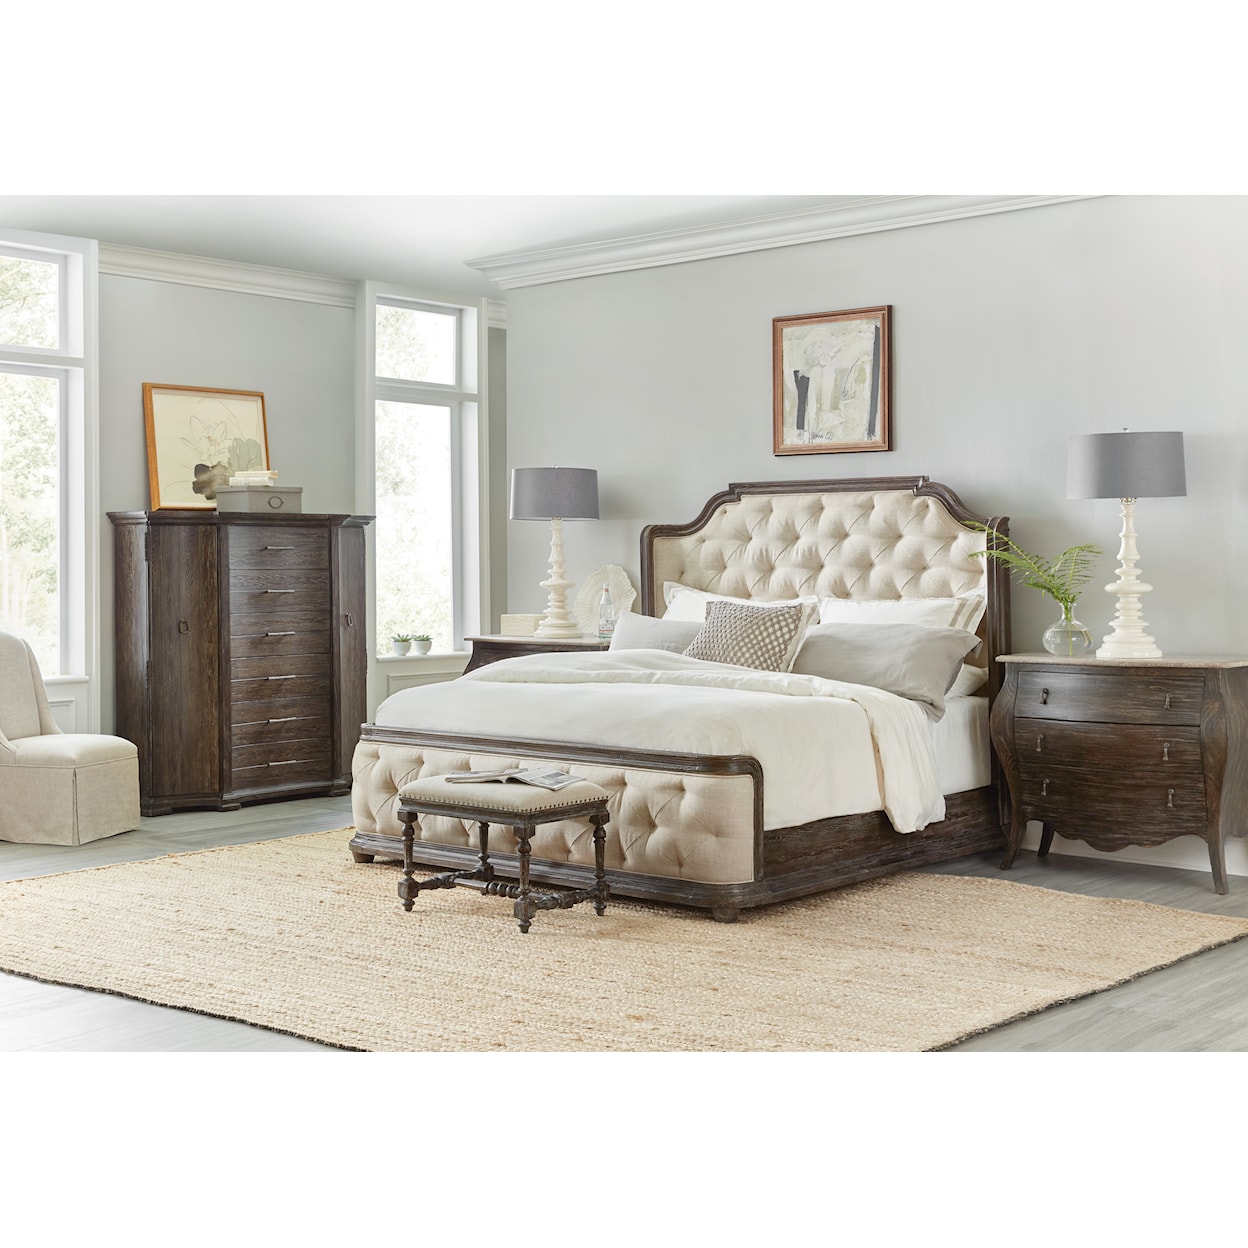 Hooker Furniture Traditions King Bedroom Set